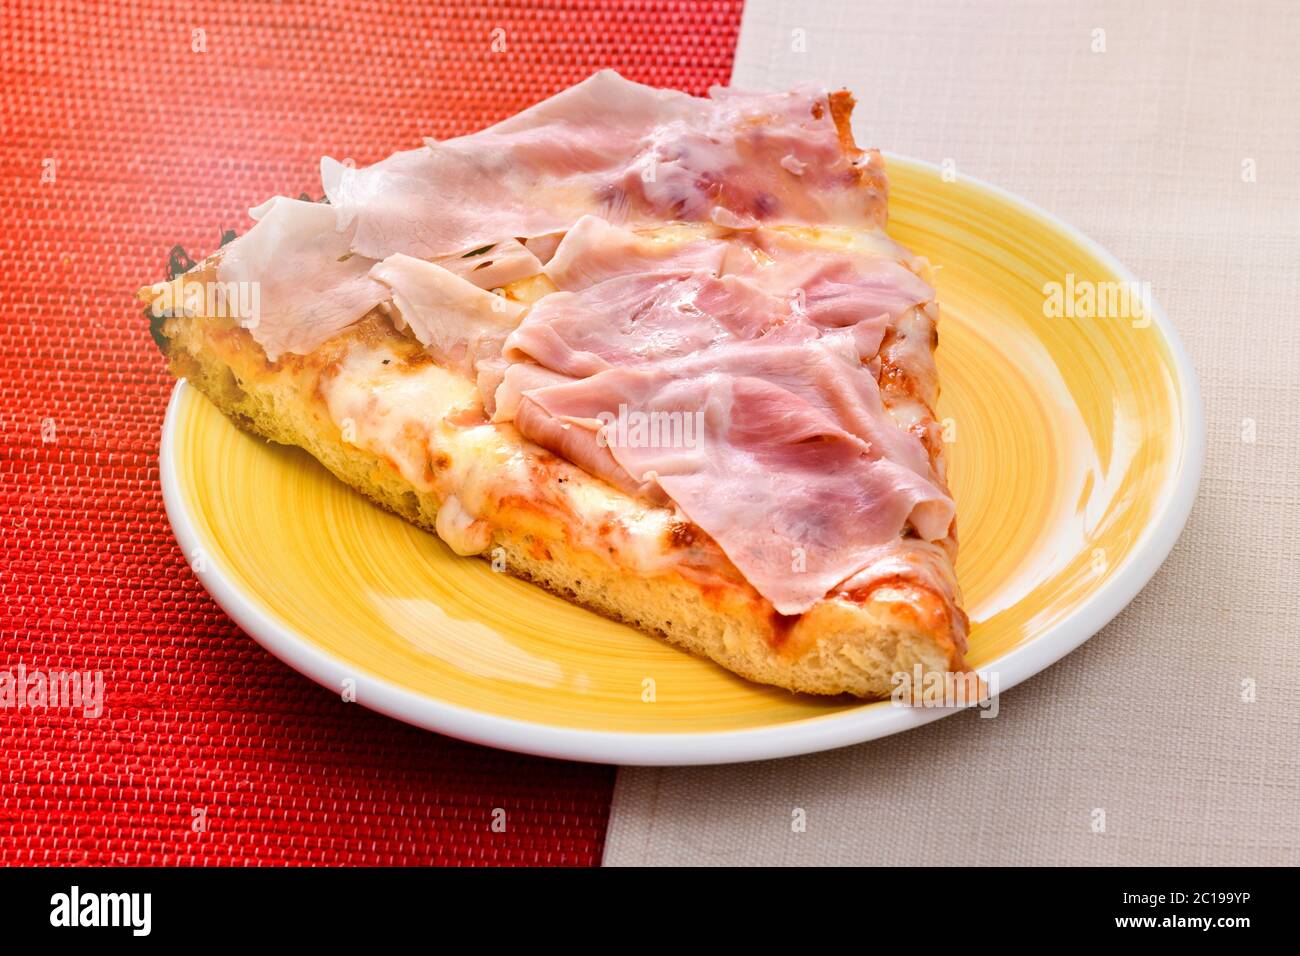 Italienische Pizza mit Schinken auf einer dicken Backbasis mit geschmolzenem Mozzarella und Tomatenmark auf einem gelben Teller auf einem zweifarbigen roten und serviert Stockfoto